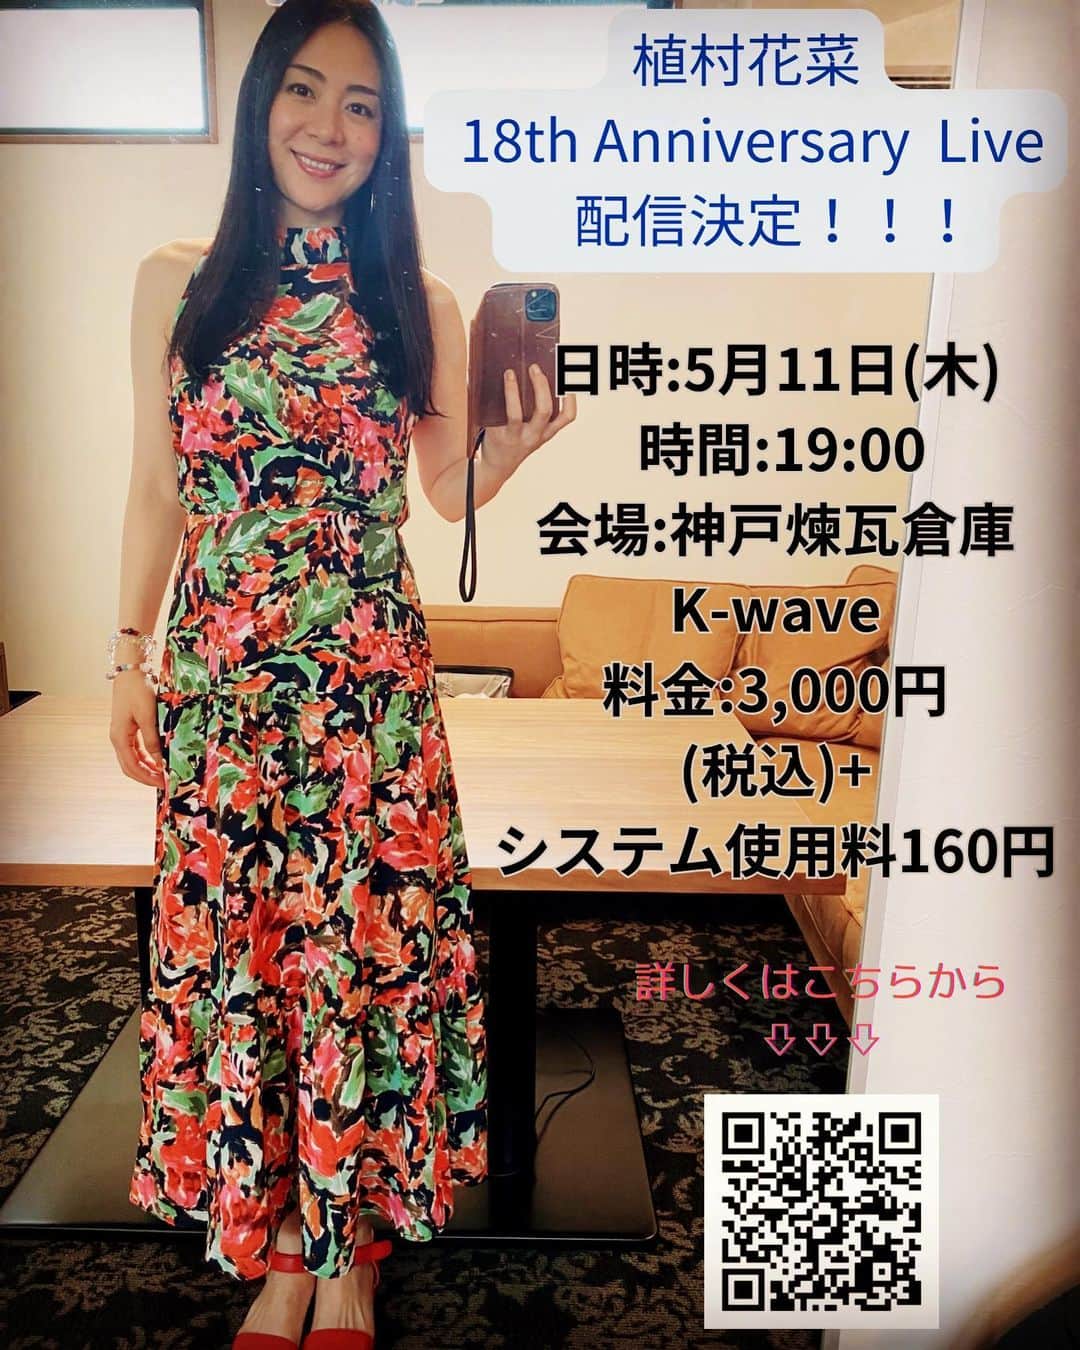 Ka-Naのインスタグラム：「Hi guys! I’m going to have my 18th Anniversary Live Show in Kobe in Japan on May 11th at 7pm. Also, the show is going to stream, too! You can watch it until May 25th.Thu 11:59pm. So, please check it out ;)  5月11日(木)に神戸煉瓦倉庫K-waveで行われる「植村花菜18th Anniversary Live」の配信が急遽決定しました！！！ ライブは観たいけど神戸は遠い、平日の夜は厳しい、小さな子供がいて出かけられない、などなど、様々な理由で会場にお越しいただけない方は、ぜひ配信でお楽しみいただけたらと思います♪  タイトル：「 植村花菜　18th Anniversary Live」＊有観客&配信ライブ  日時：2023年5月11日(木)  時間：19:00 会場：神戸煉瓦倉庫K-wave 料金：3,000円(税込)+システム使用料160円 出演：植村花菜  視聴期限: 2023年5月25日(木) 23:59 まで  もちろん、会場チケットも引き続き絶賛発売中なので、会場にお越しいただける方はぜひお待ちしています！ この前ブログでアップし忘れた徳島ライブの時の衣装写真で投稿してみた笑。  っというわけで、明日は ロハスフェスタ大阪2023でお会いしましょー( ´ ▽ ` )ﾉ  #kanauemura#ka-na#18thanniversary#kobe# japan#streaminglive#植村花菜#配信ライブ」